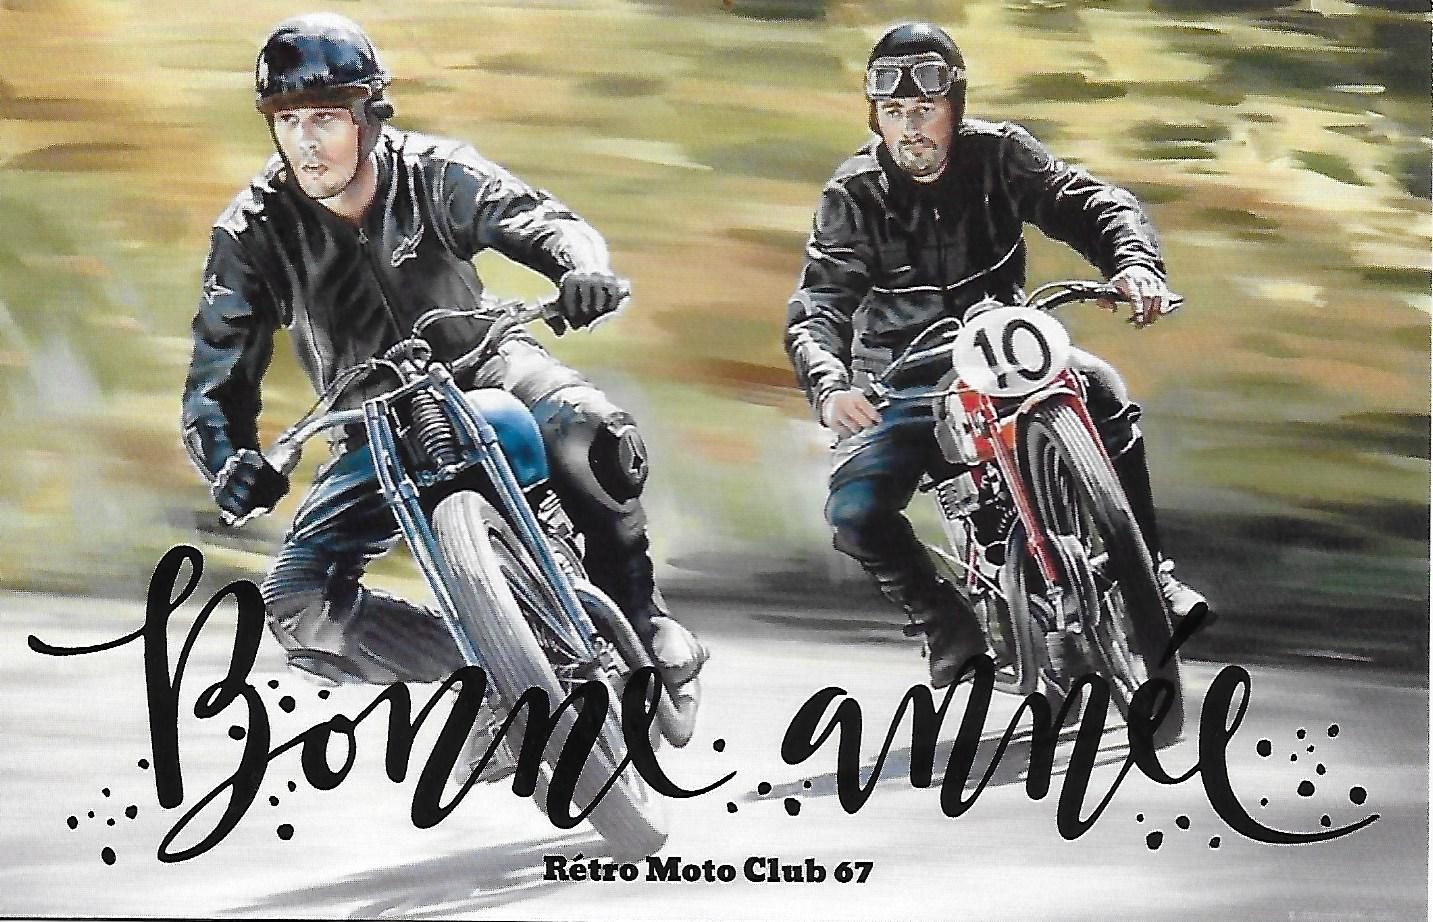 BONNE ANNEE 2020 - Rétro Moto Club 67 Molsheim